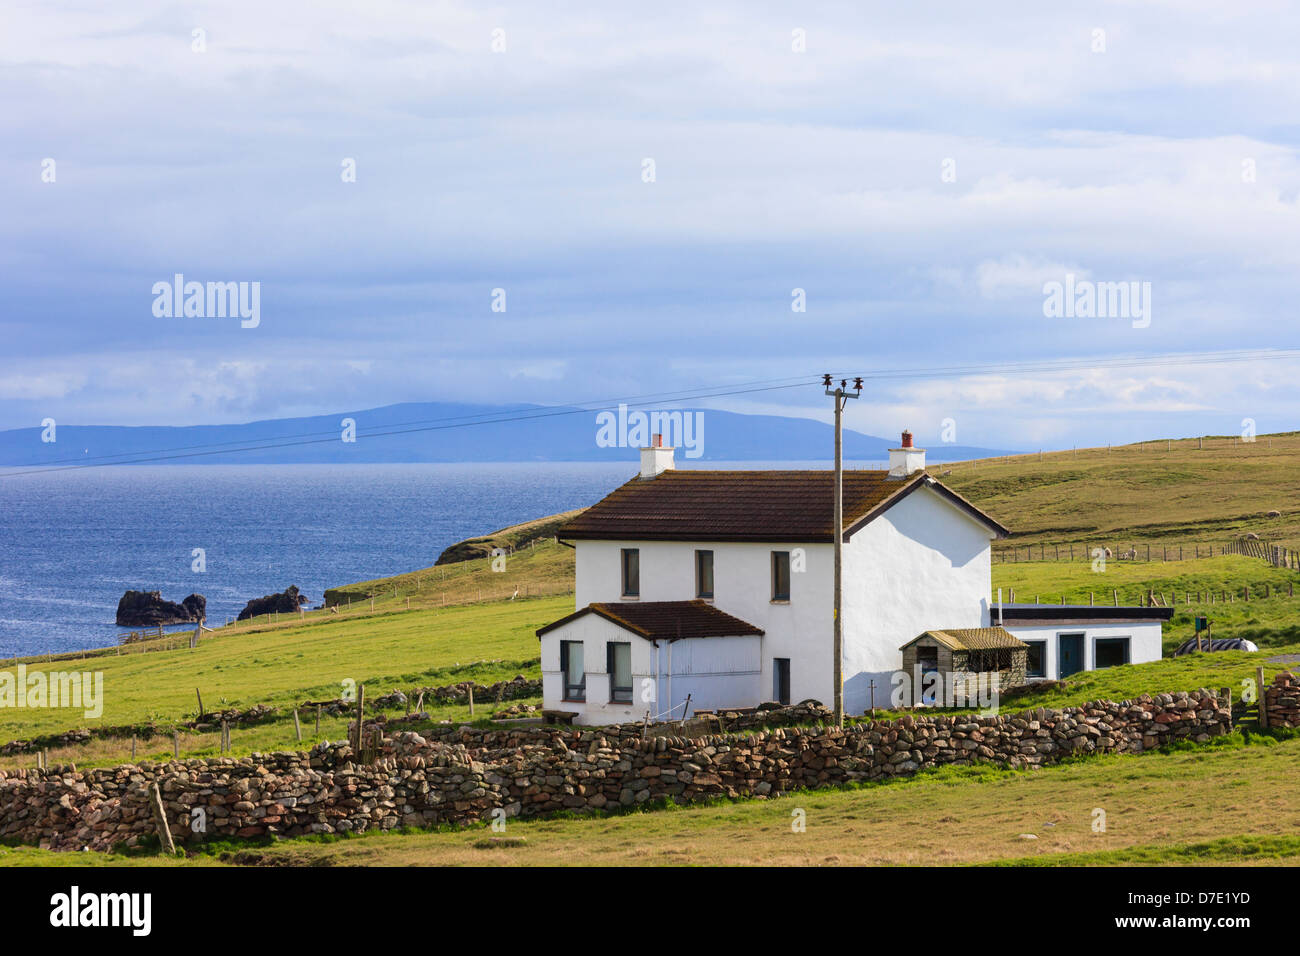 Remote whitewashed house overlooking Braewick bay on the Scottish coast at Eshaness, Shetland Islands, Scotland, UK Stock Photo